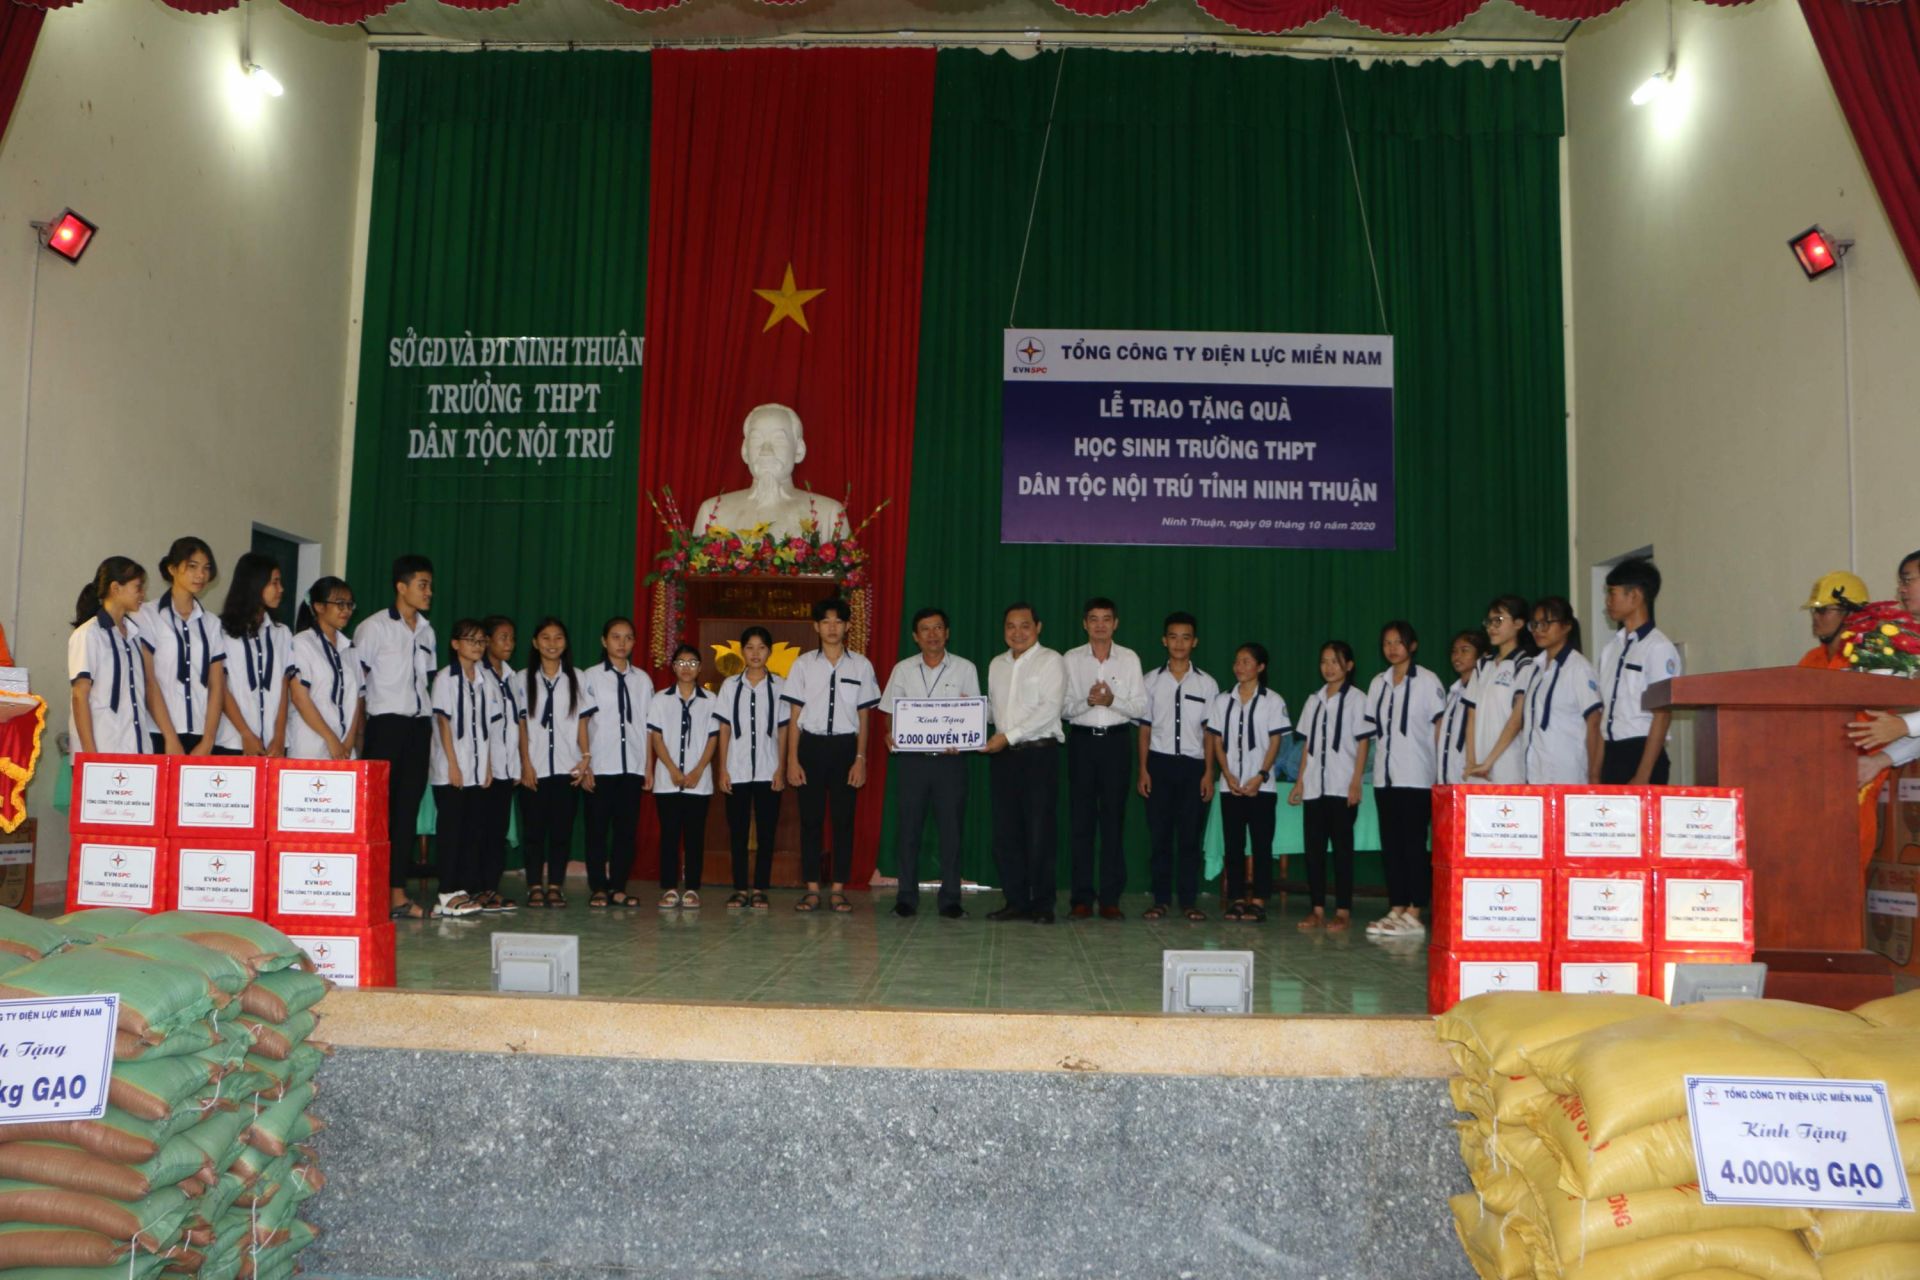 Đoàn công tác EVNSPC tặng quà cho học sinh Trường THPT Dân tộc nội trú tỉnh Ninh Thuận